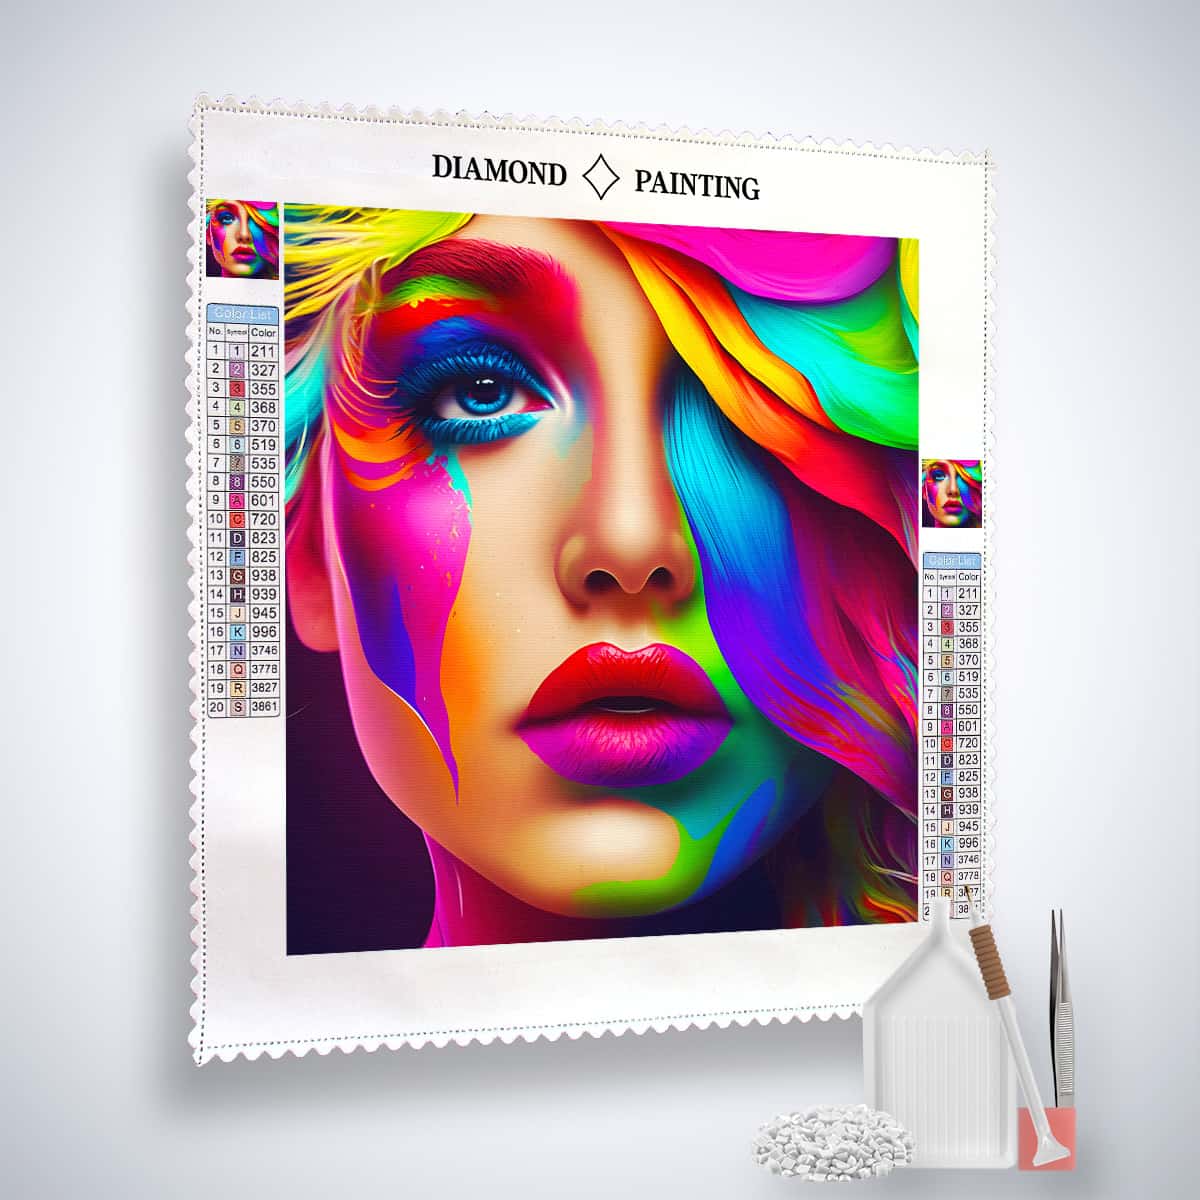 AB Diamond Painting - Farbverlauf Frau - gedruckt in Ultra-HD - AB Diamond, Menschen, Neu eingetroffen, Quadratisch